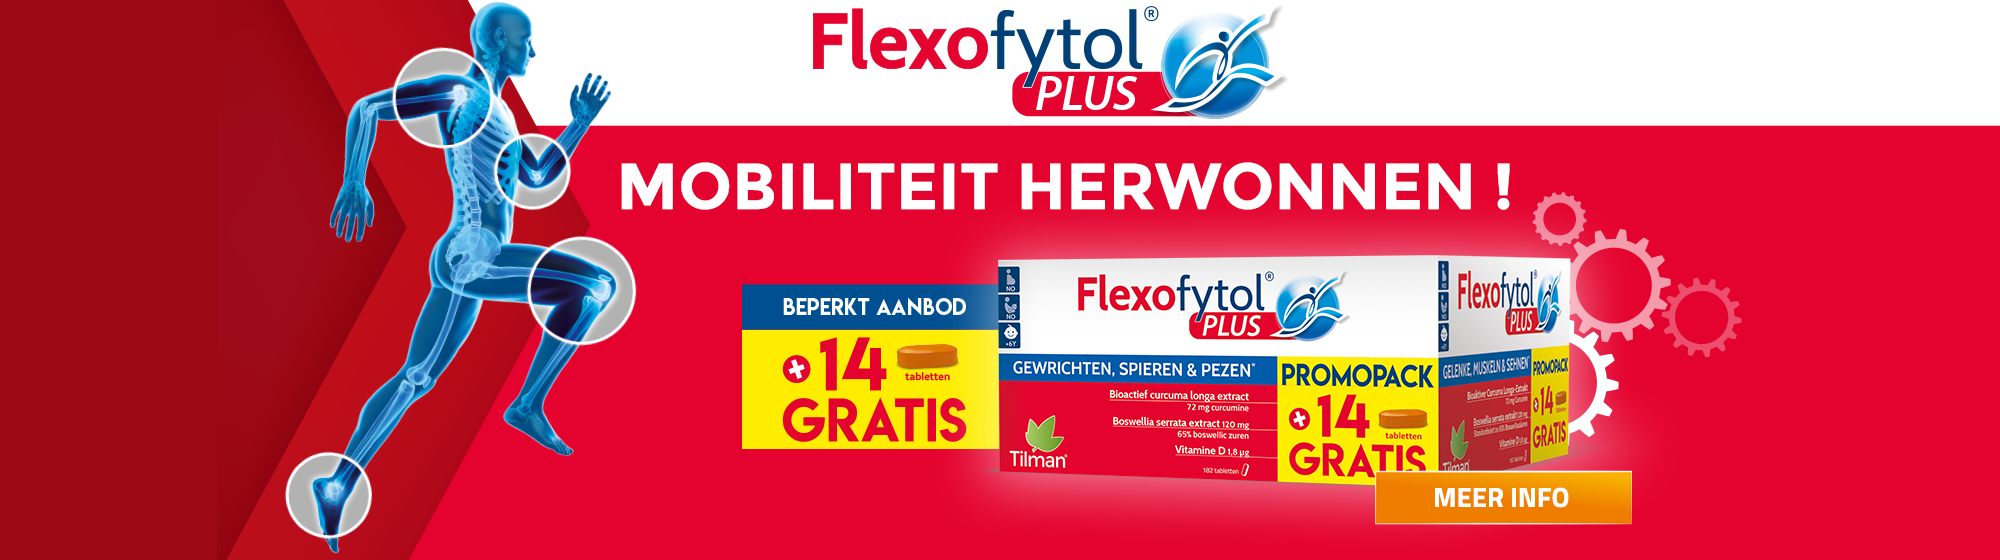 flexofytol.be-banner-flexofytol-plus_2021_desktop_nl